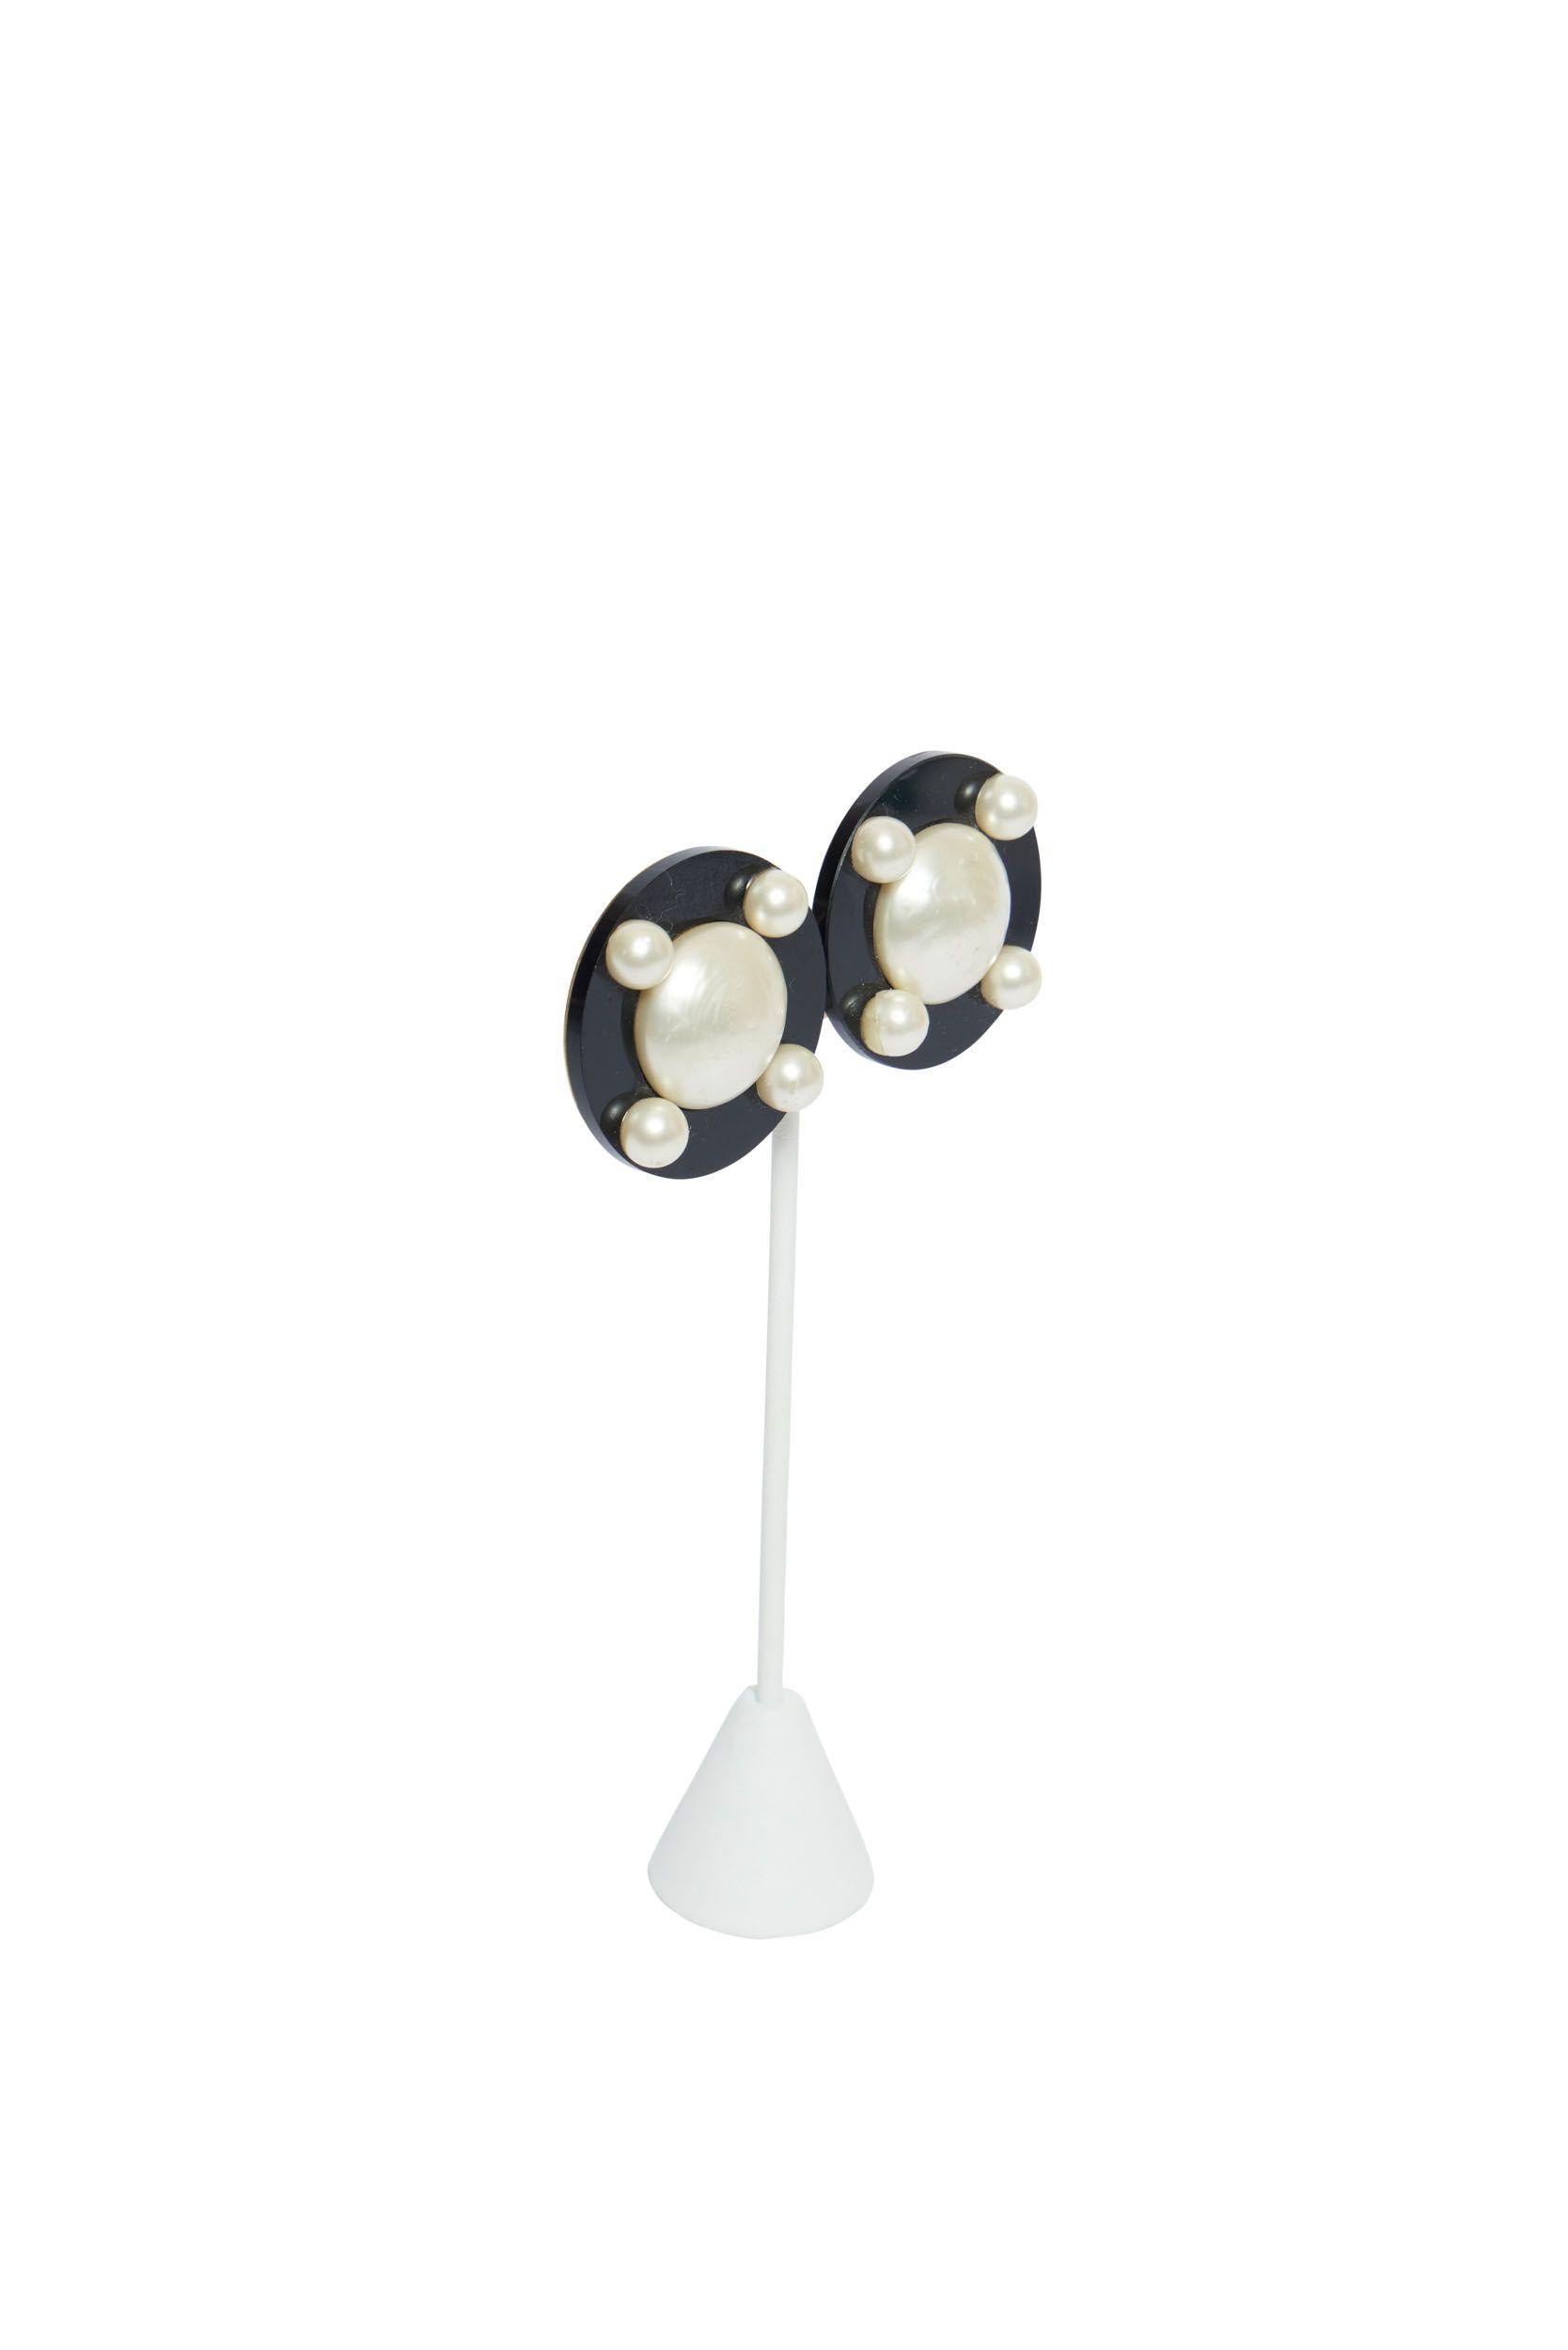 Schwarze Chanel Clip-Ohrringe aus Lucite mit einer großen Perle in der Mitte. Auf der Blende sind vier Perlen zu sehen und der Durchmesser beträgt 1,6'. Auf der Rückseite der Ohrringe befindet sich ein Goldplättchen, das die Echtheit bestätigt.